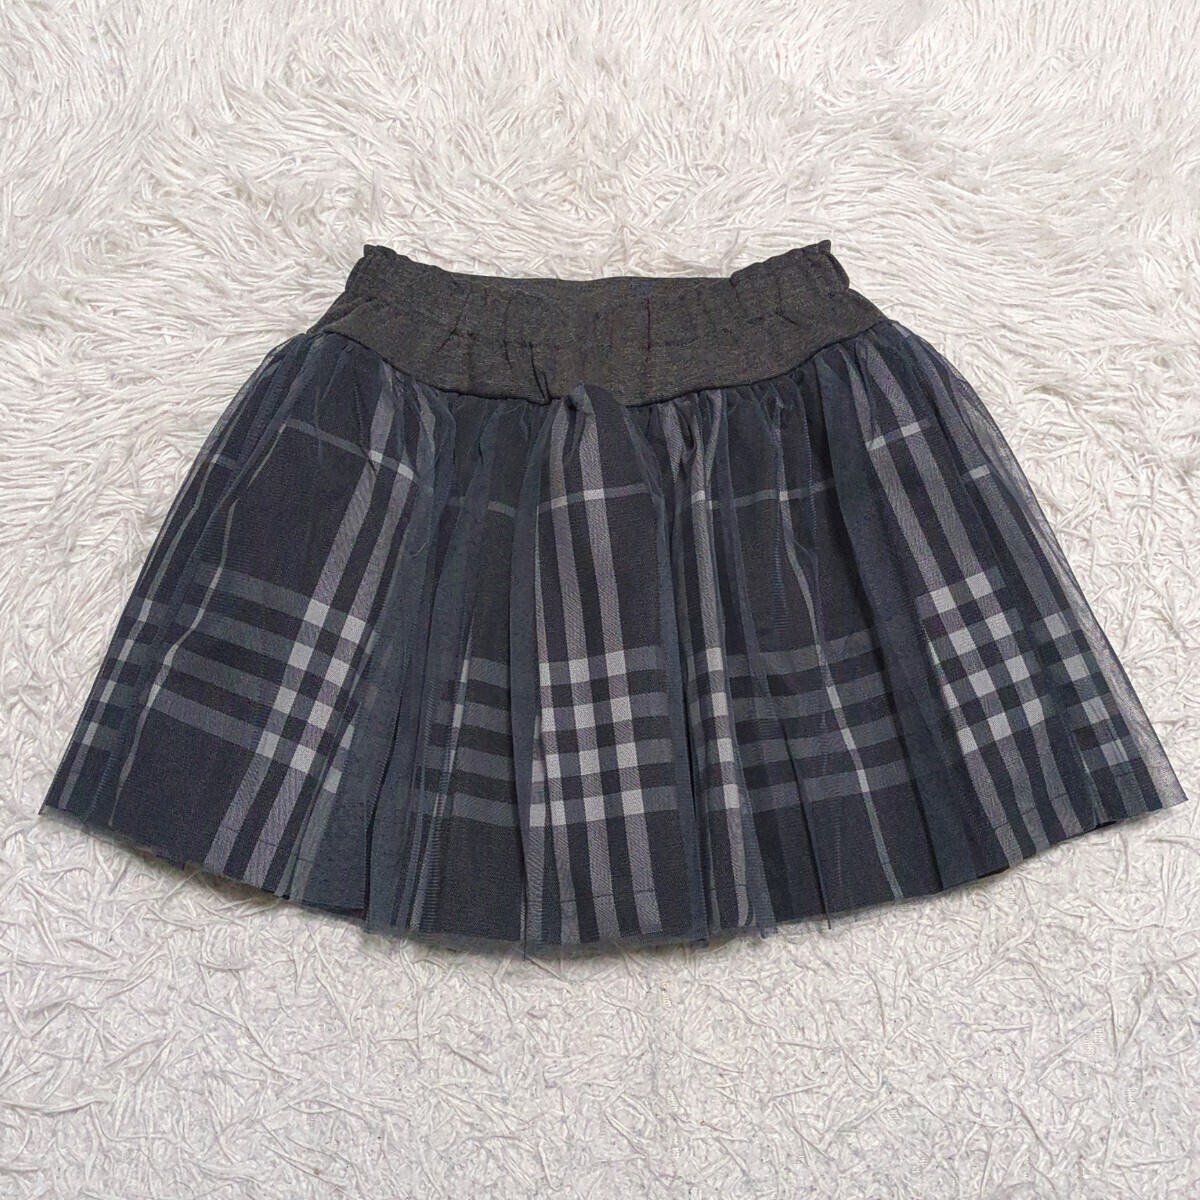 【送料無料】Rora japan ローラ チュール スカート 130cm ウエストゴム チェック キッズ 子供服の画像2